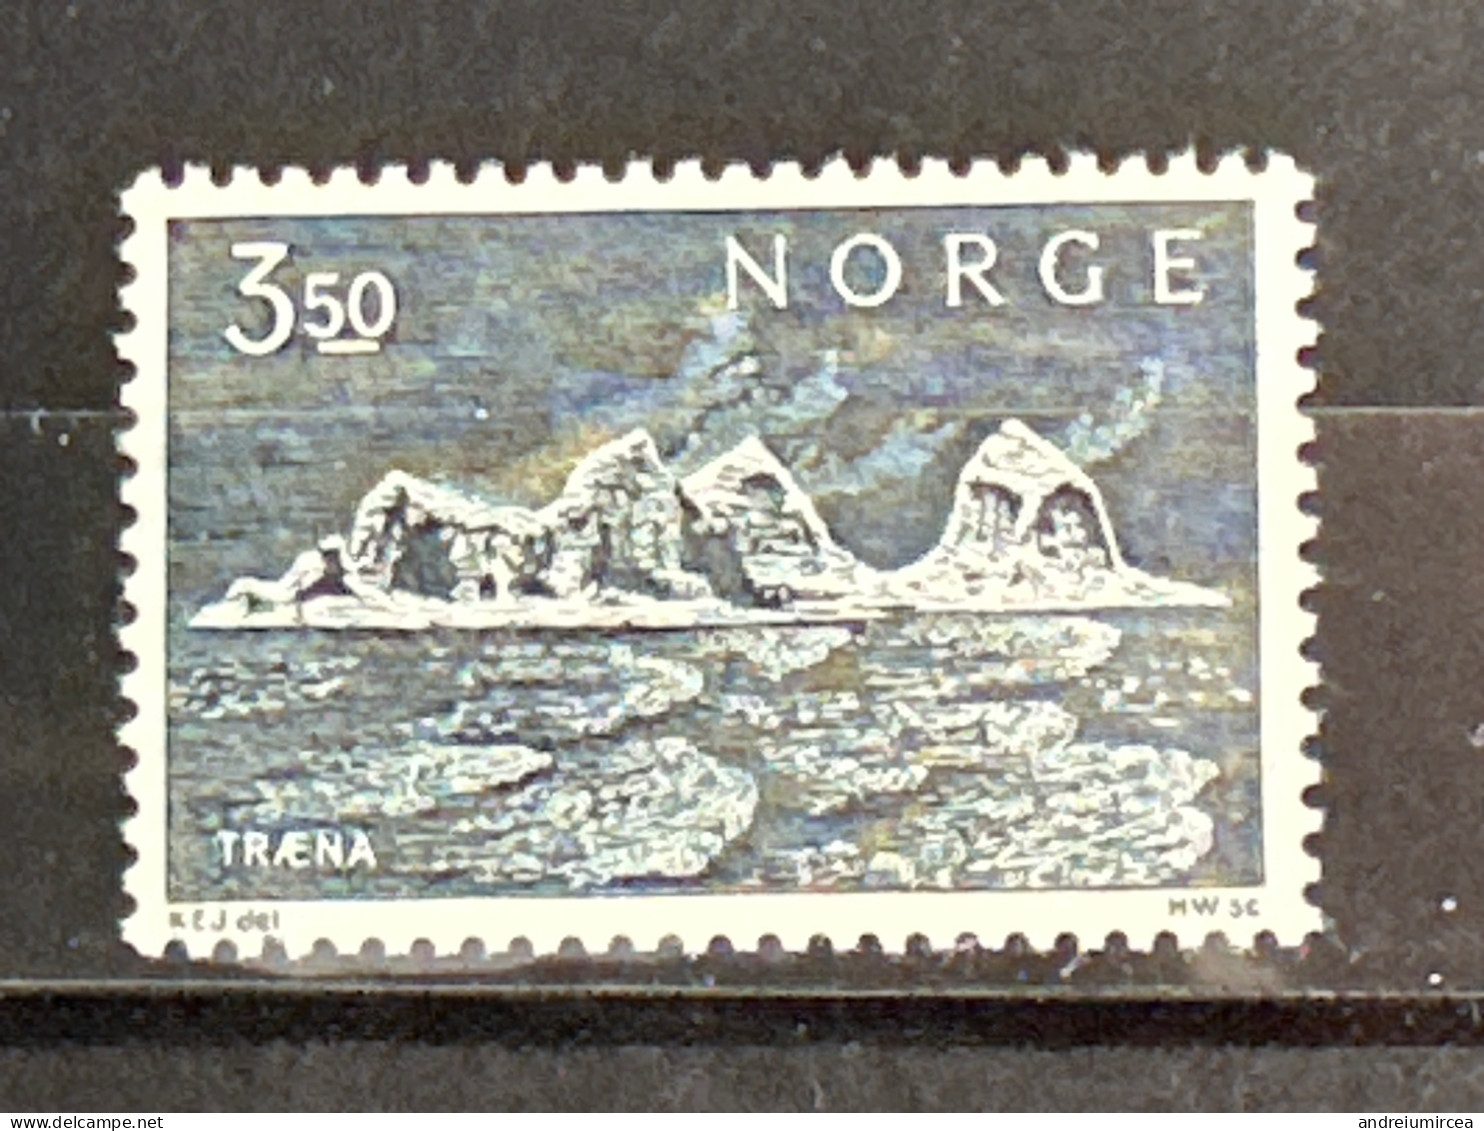 Norvege MNH - Ungebraucht